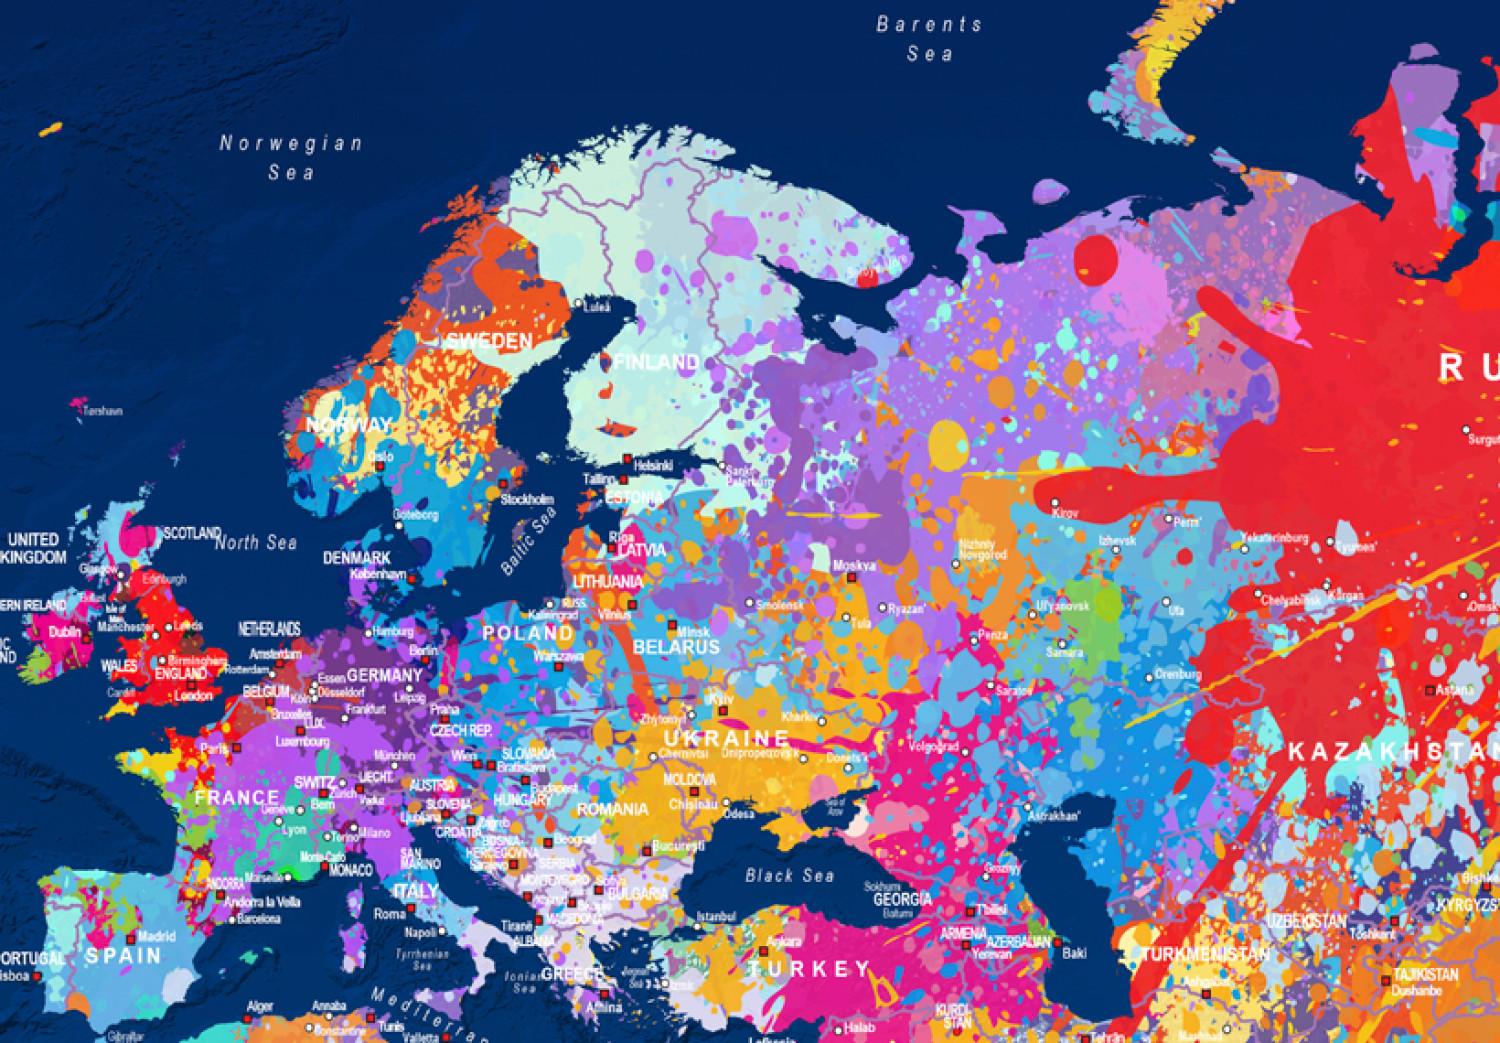 Cuadro Continentes en colores (1 parte) - mapa mundial artístico con letras